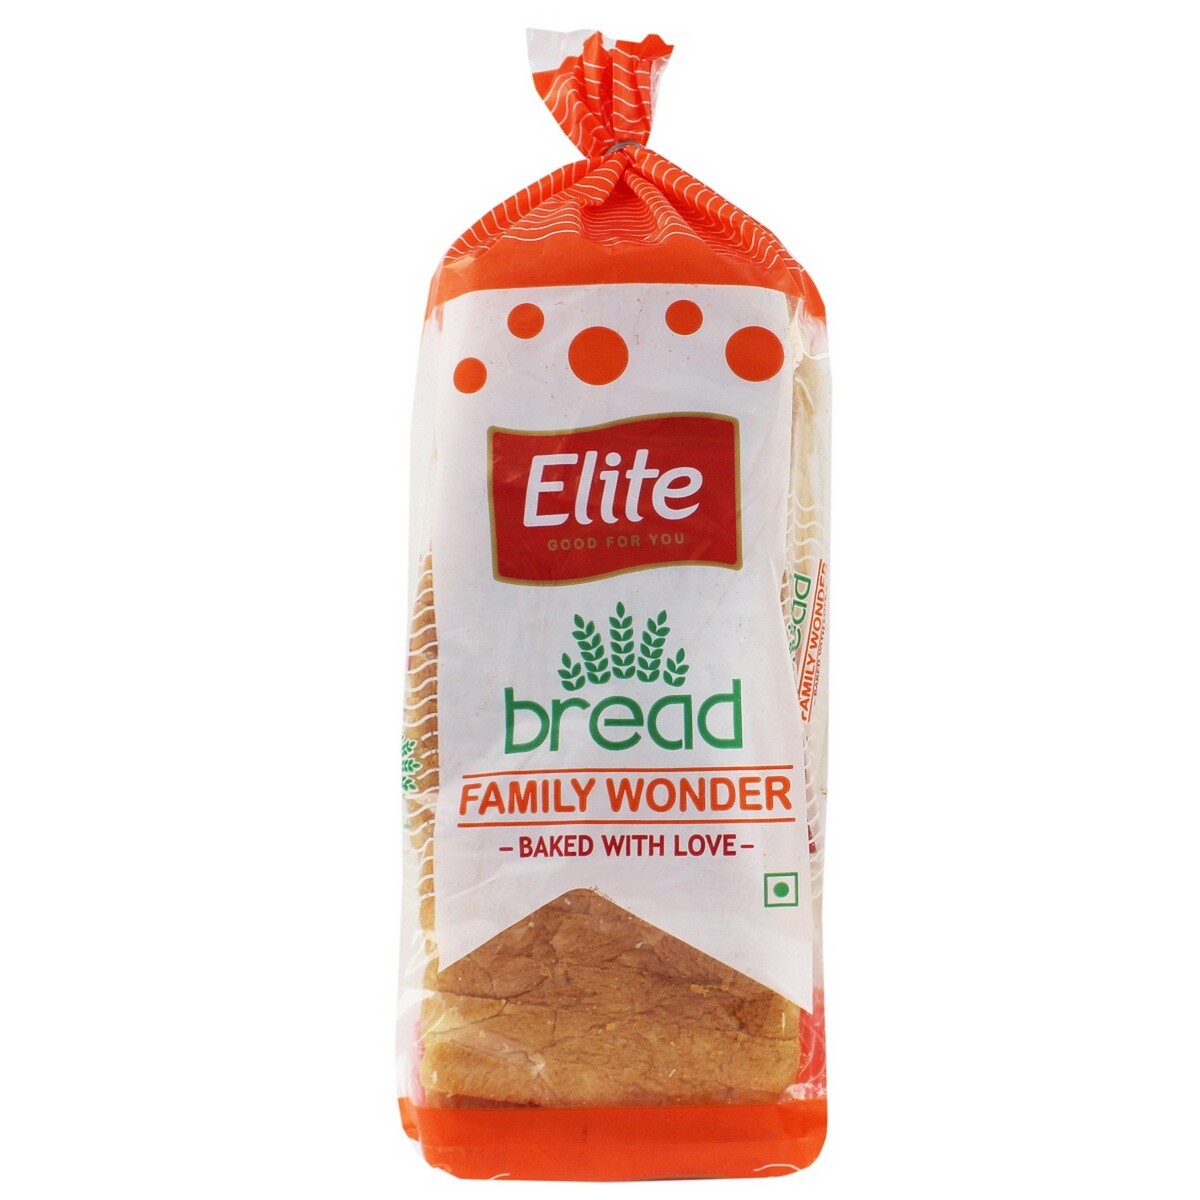 Elite Bread Family Wonder 600g